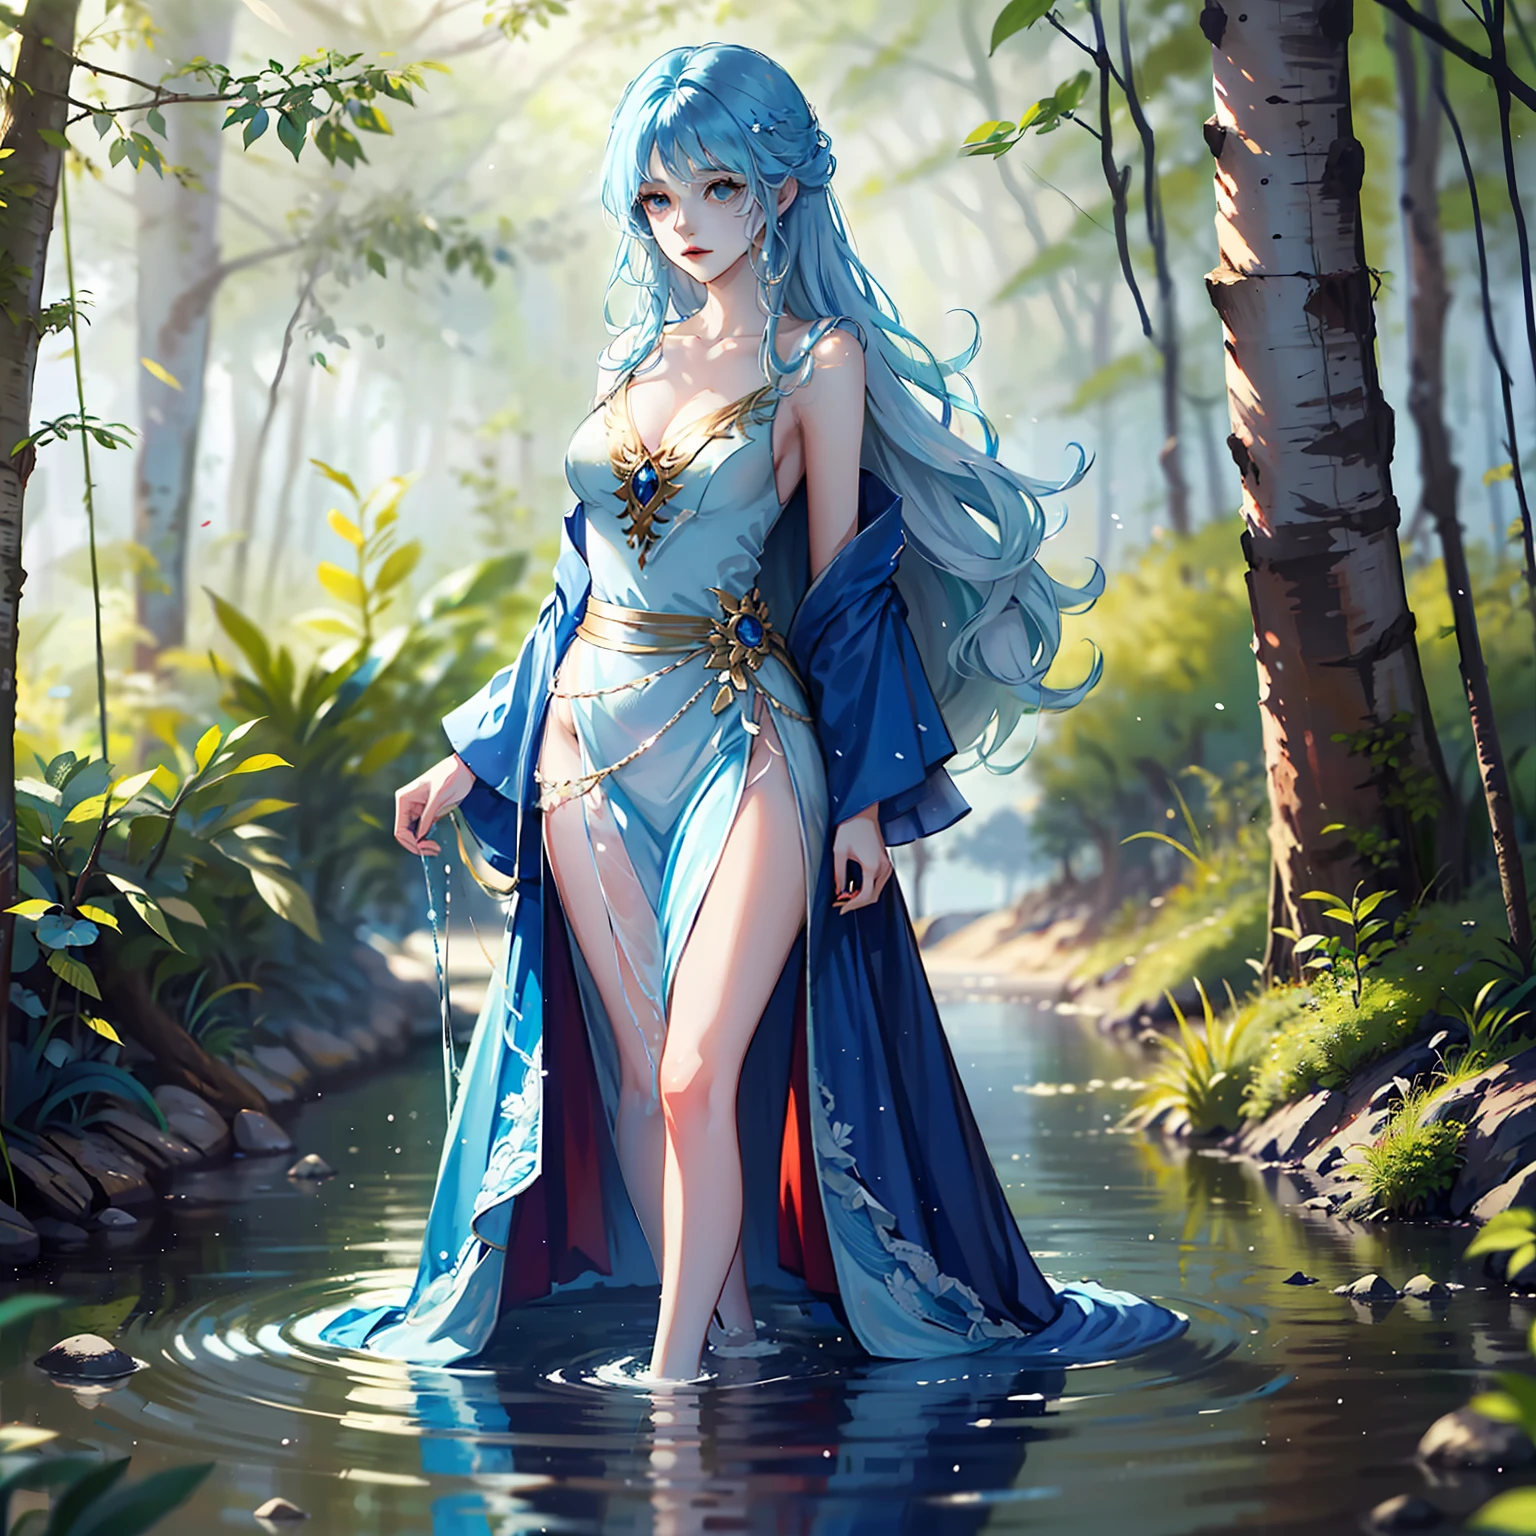 女士, 美丽的, 蓝头发, 穿着蓝色长裙, 长毛, 神圣, 神秘, 水上行走, 在树林里, 独自的, 女士 whose body made of water